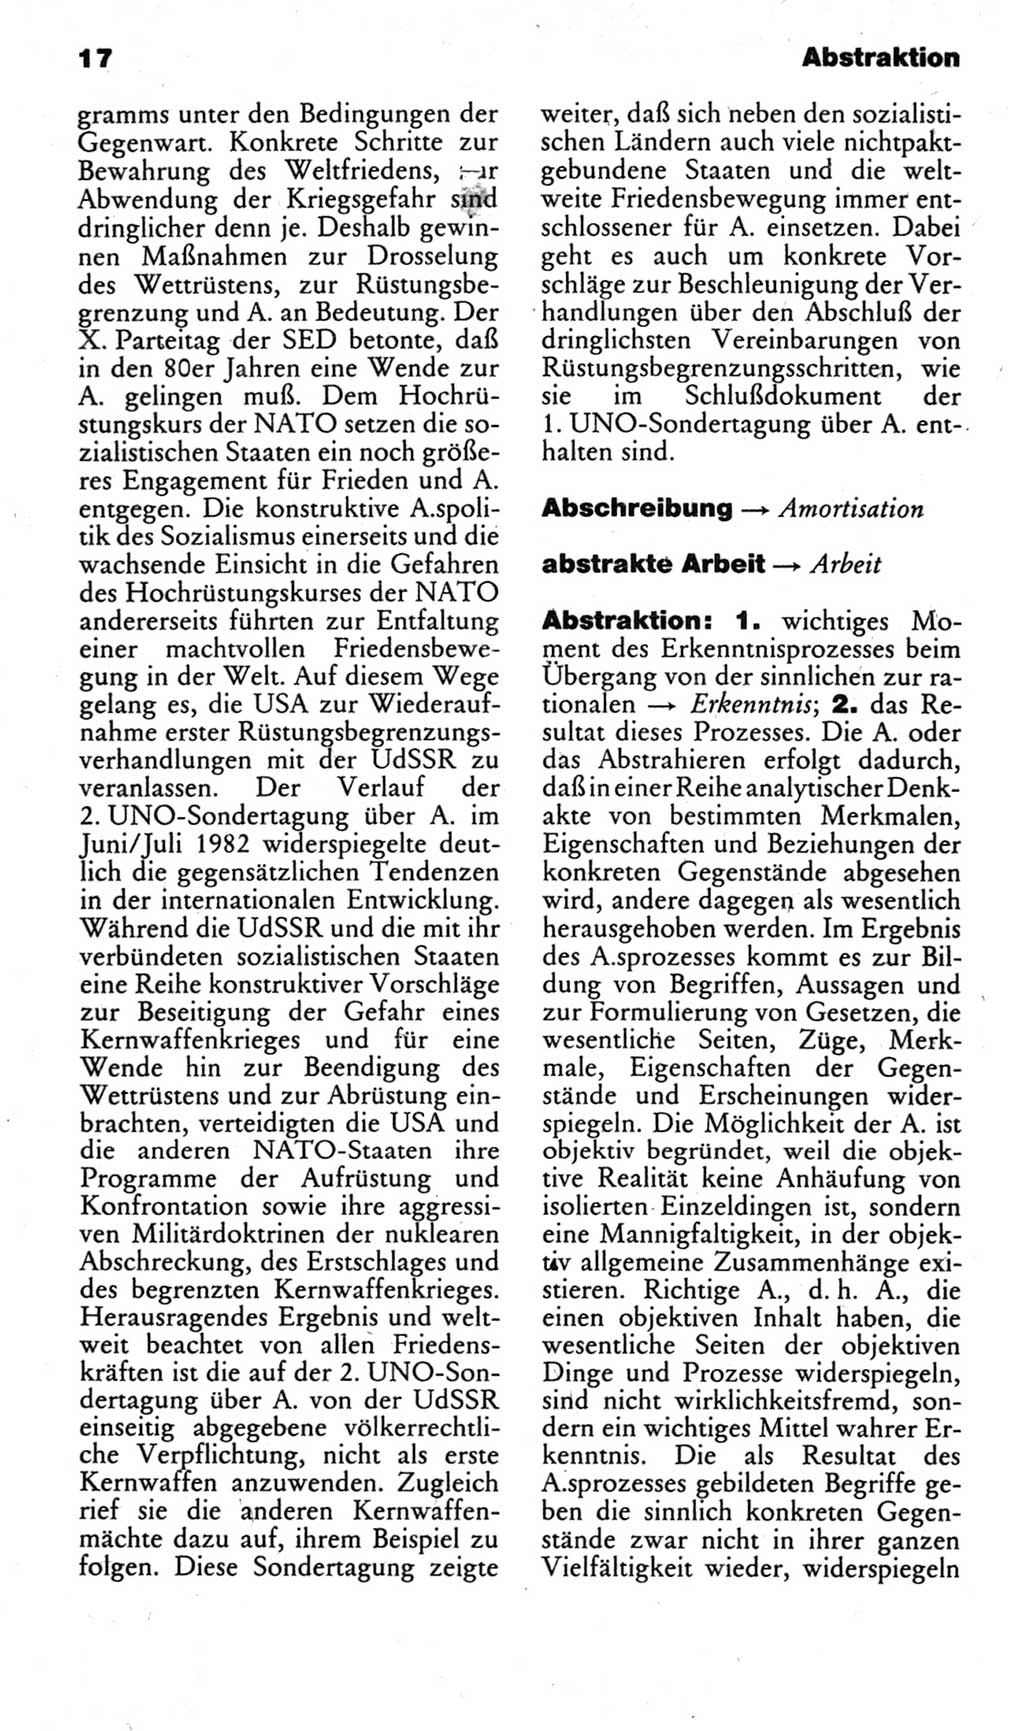 Kleines politisches Wörterbuch [Deutsche Demokratische Republik (DDR)] 1985, Seite 17 (Kl. pol. Wb. DDR 1985, S. 17)